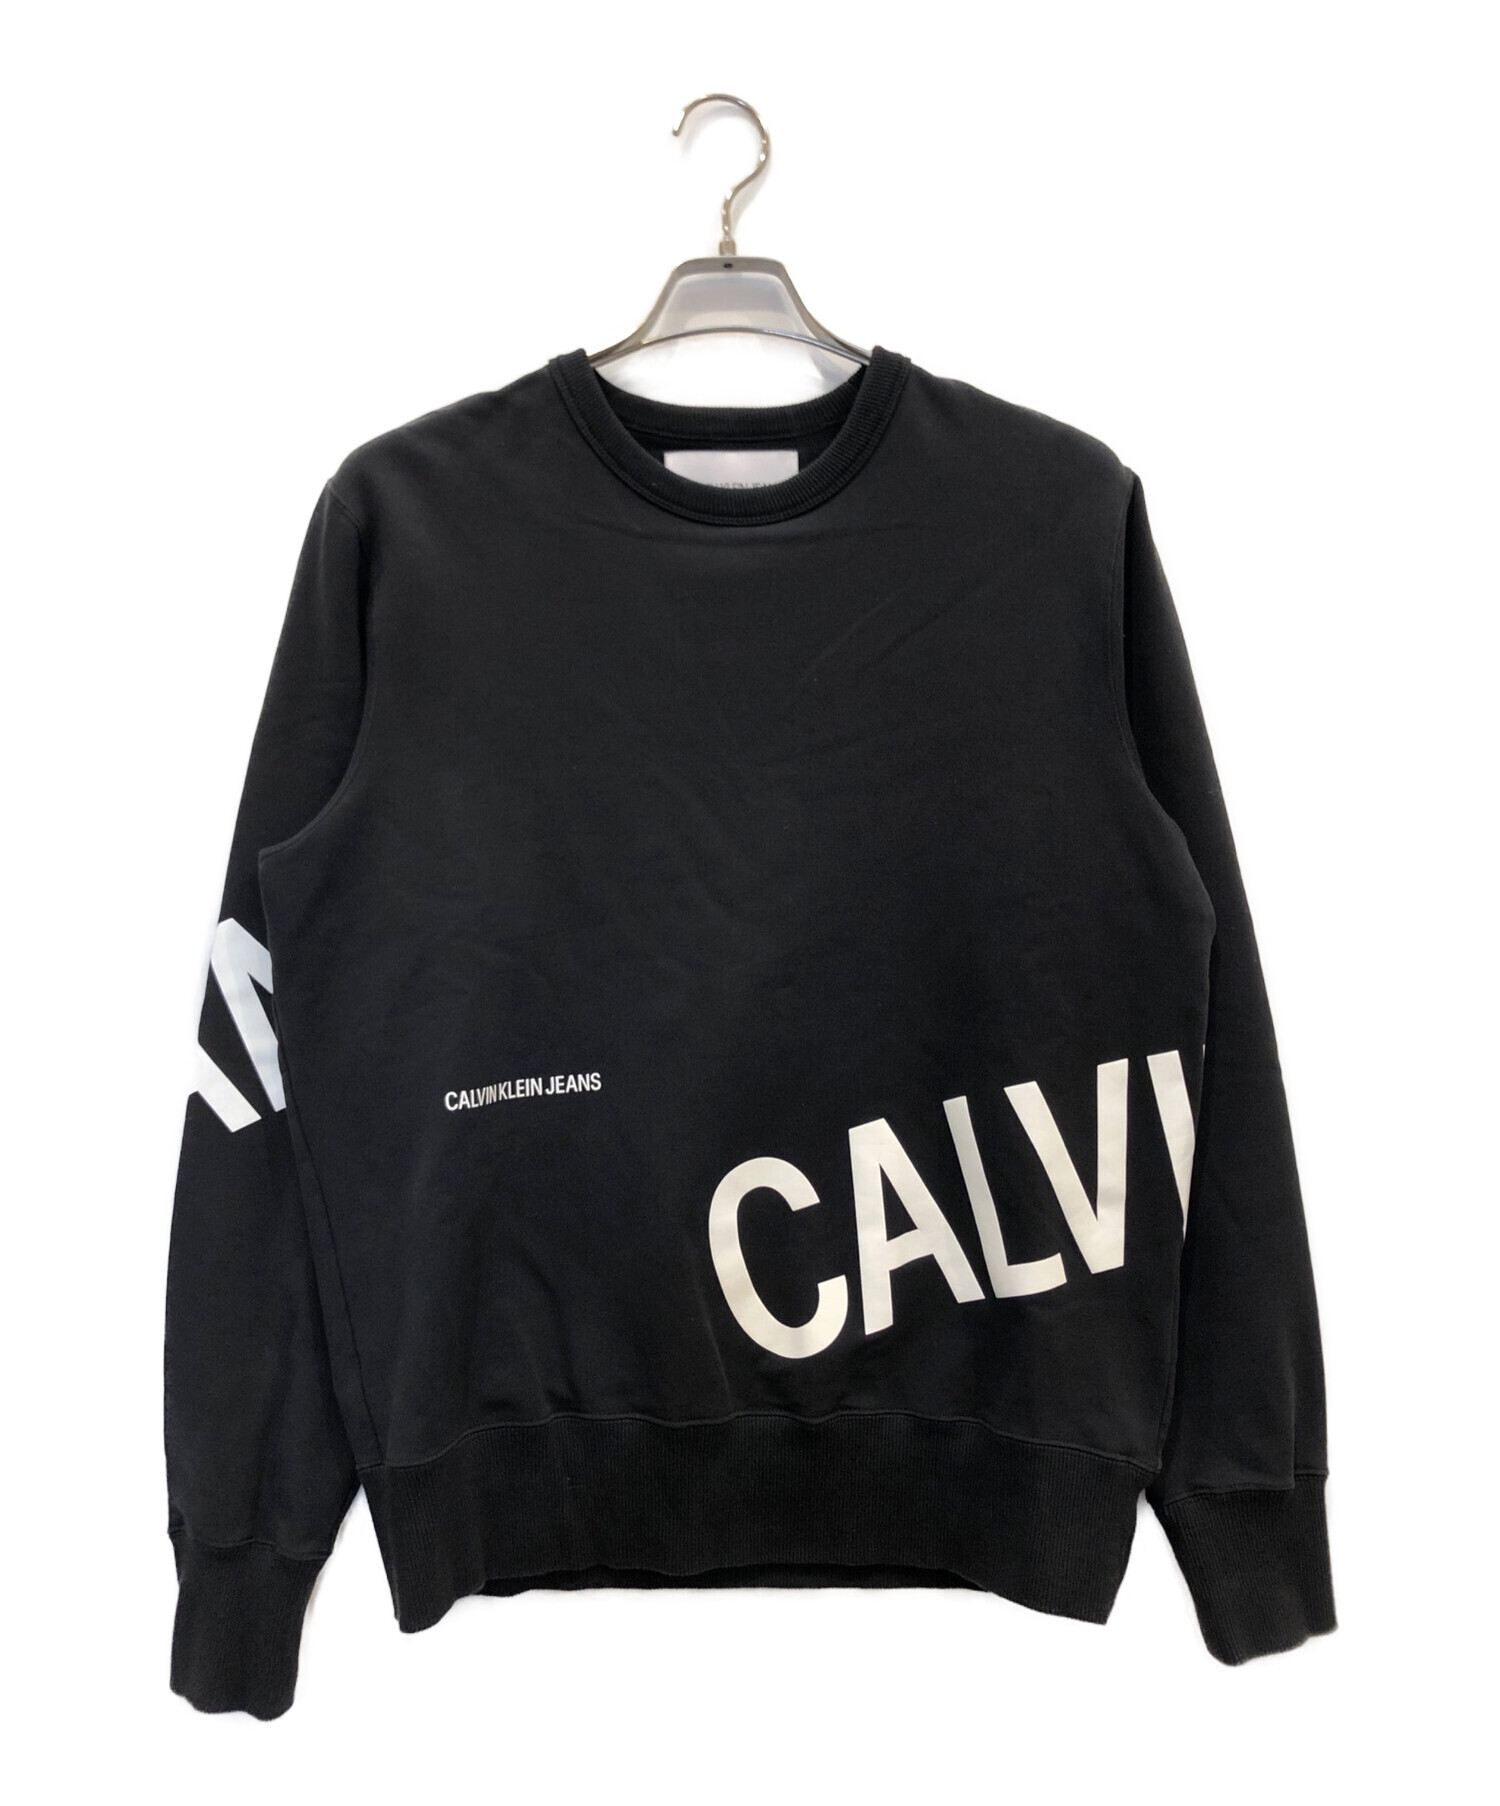 Calvin Klein Jeans (カルバンクラインジーンズ) スウェット ブラック サイズ:M